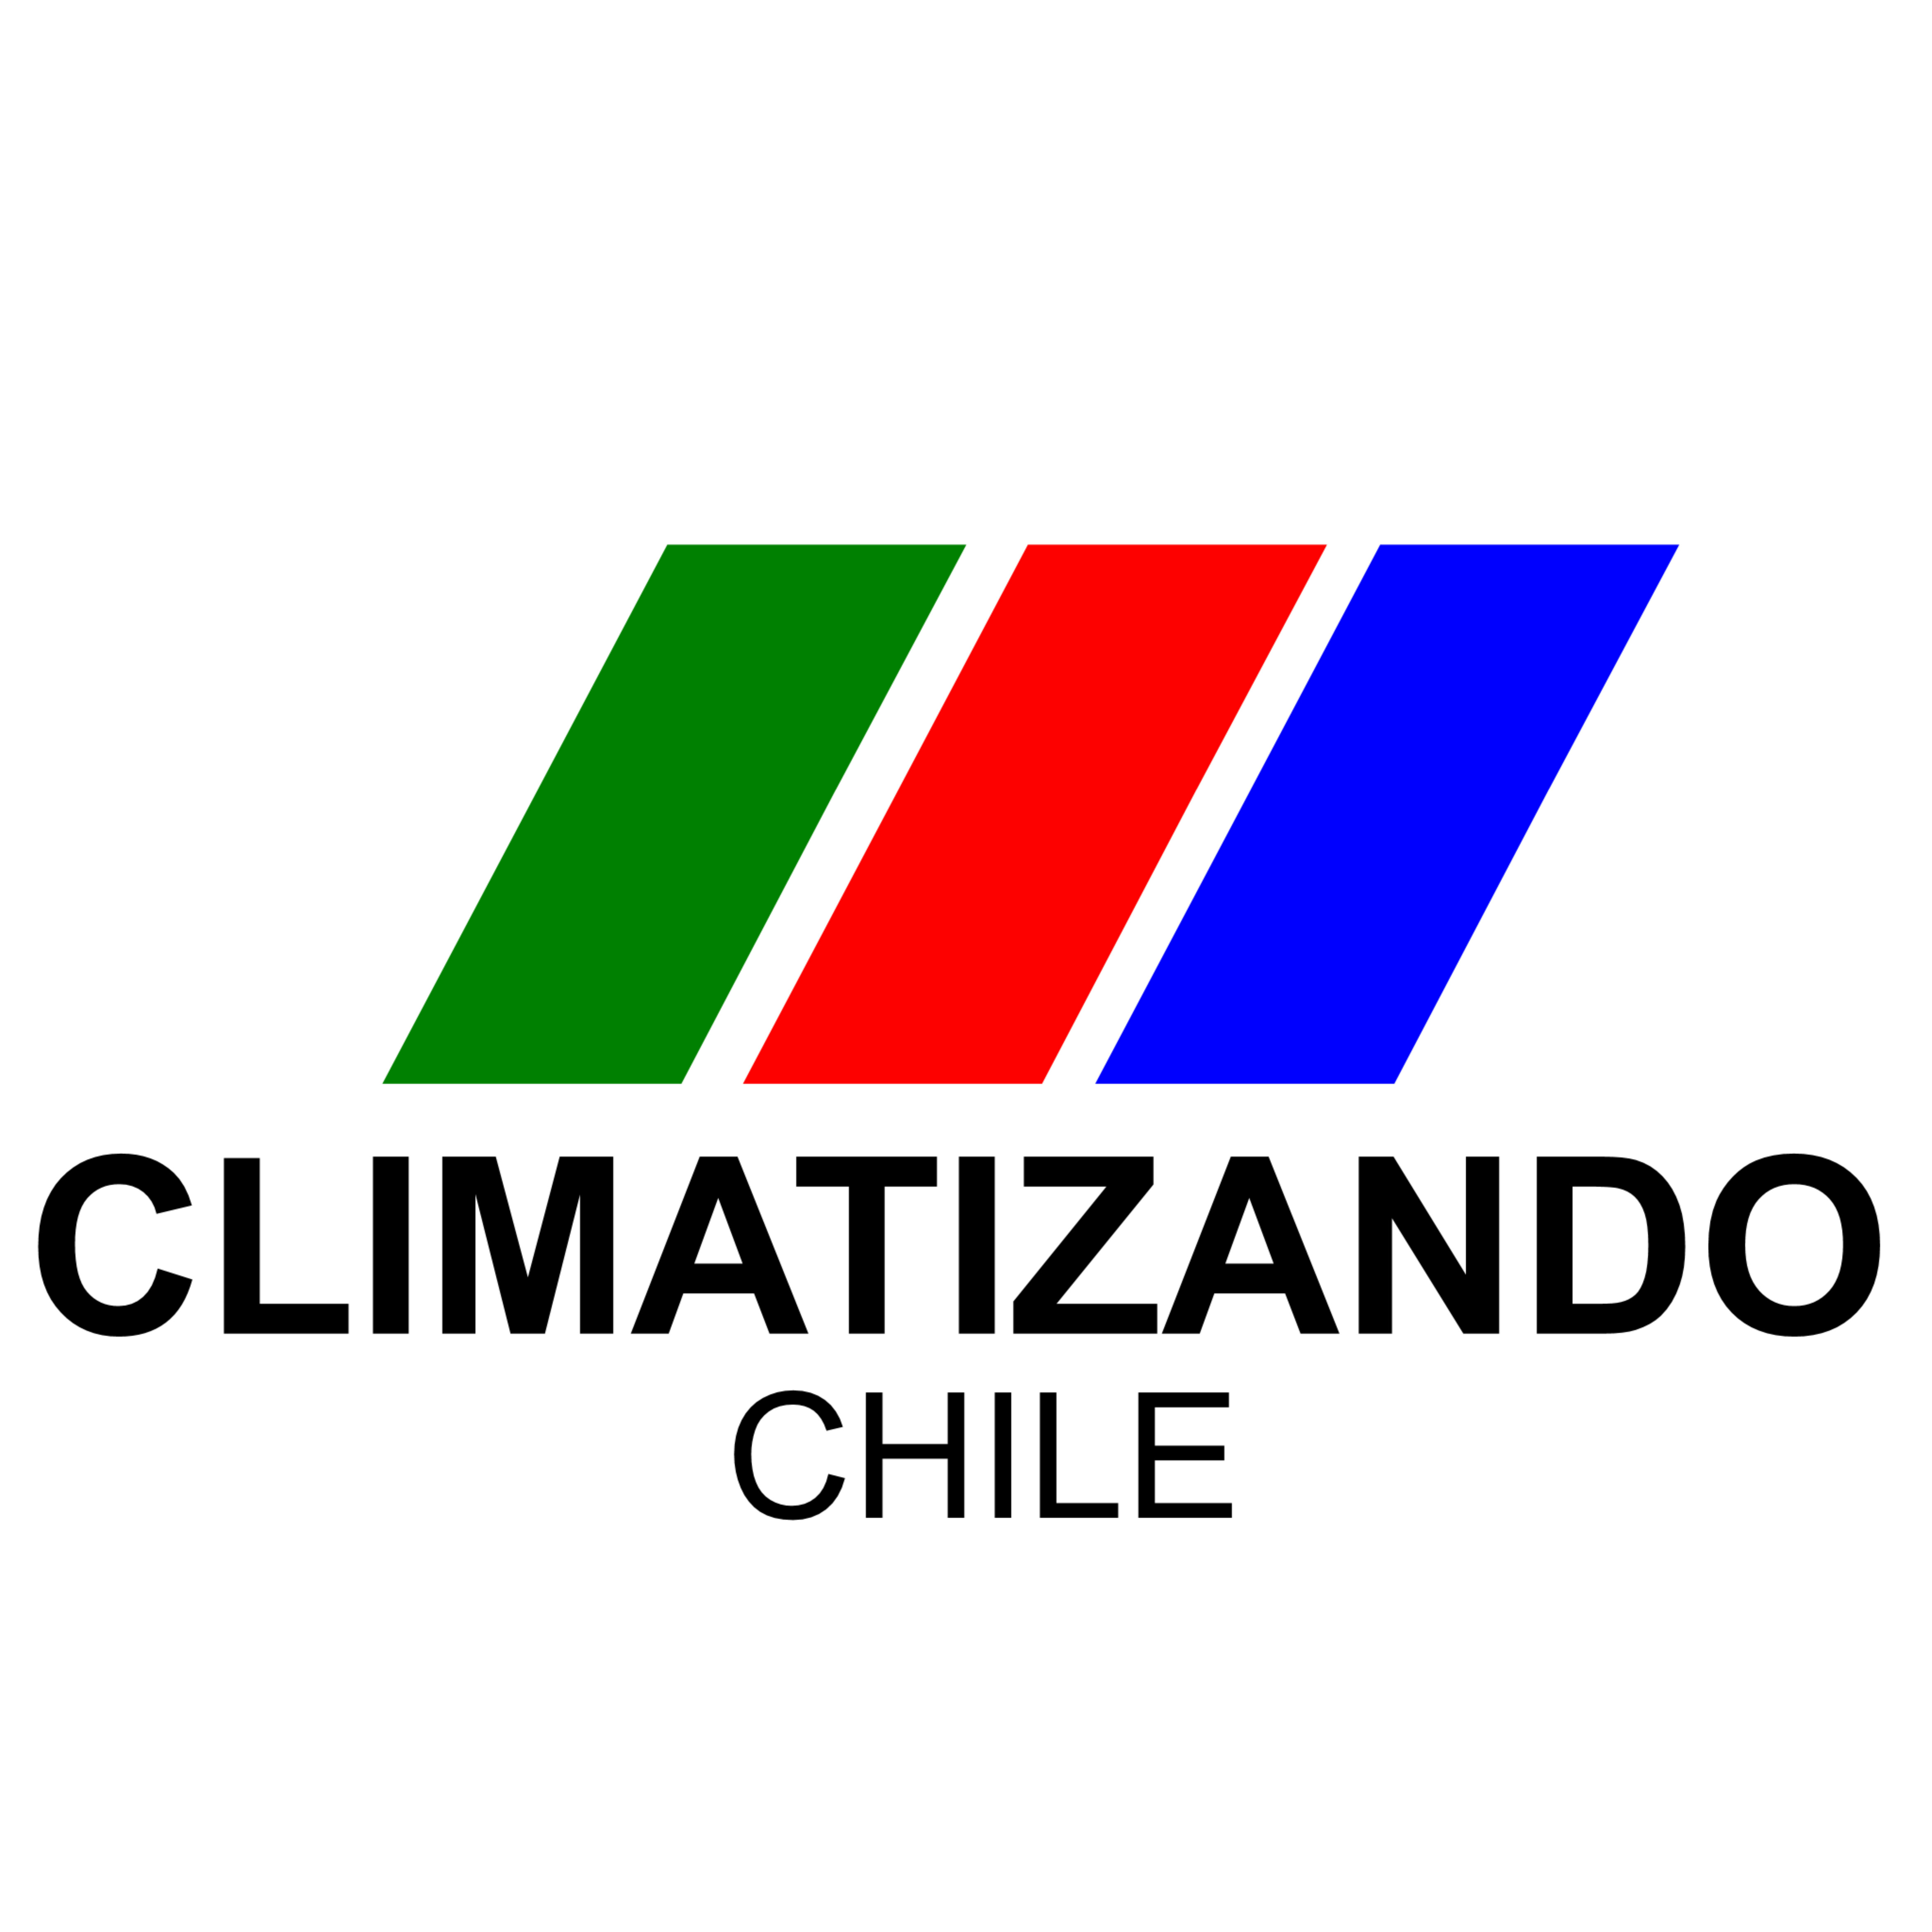 Climatizando Chile SpA